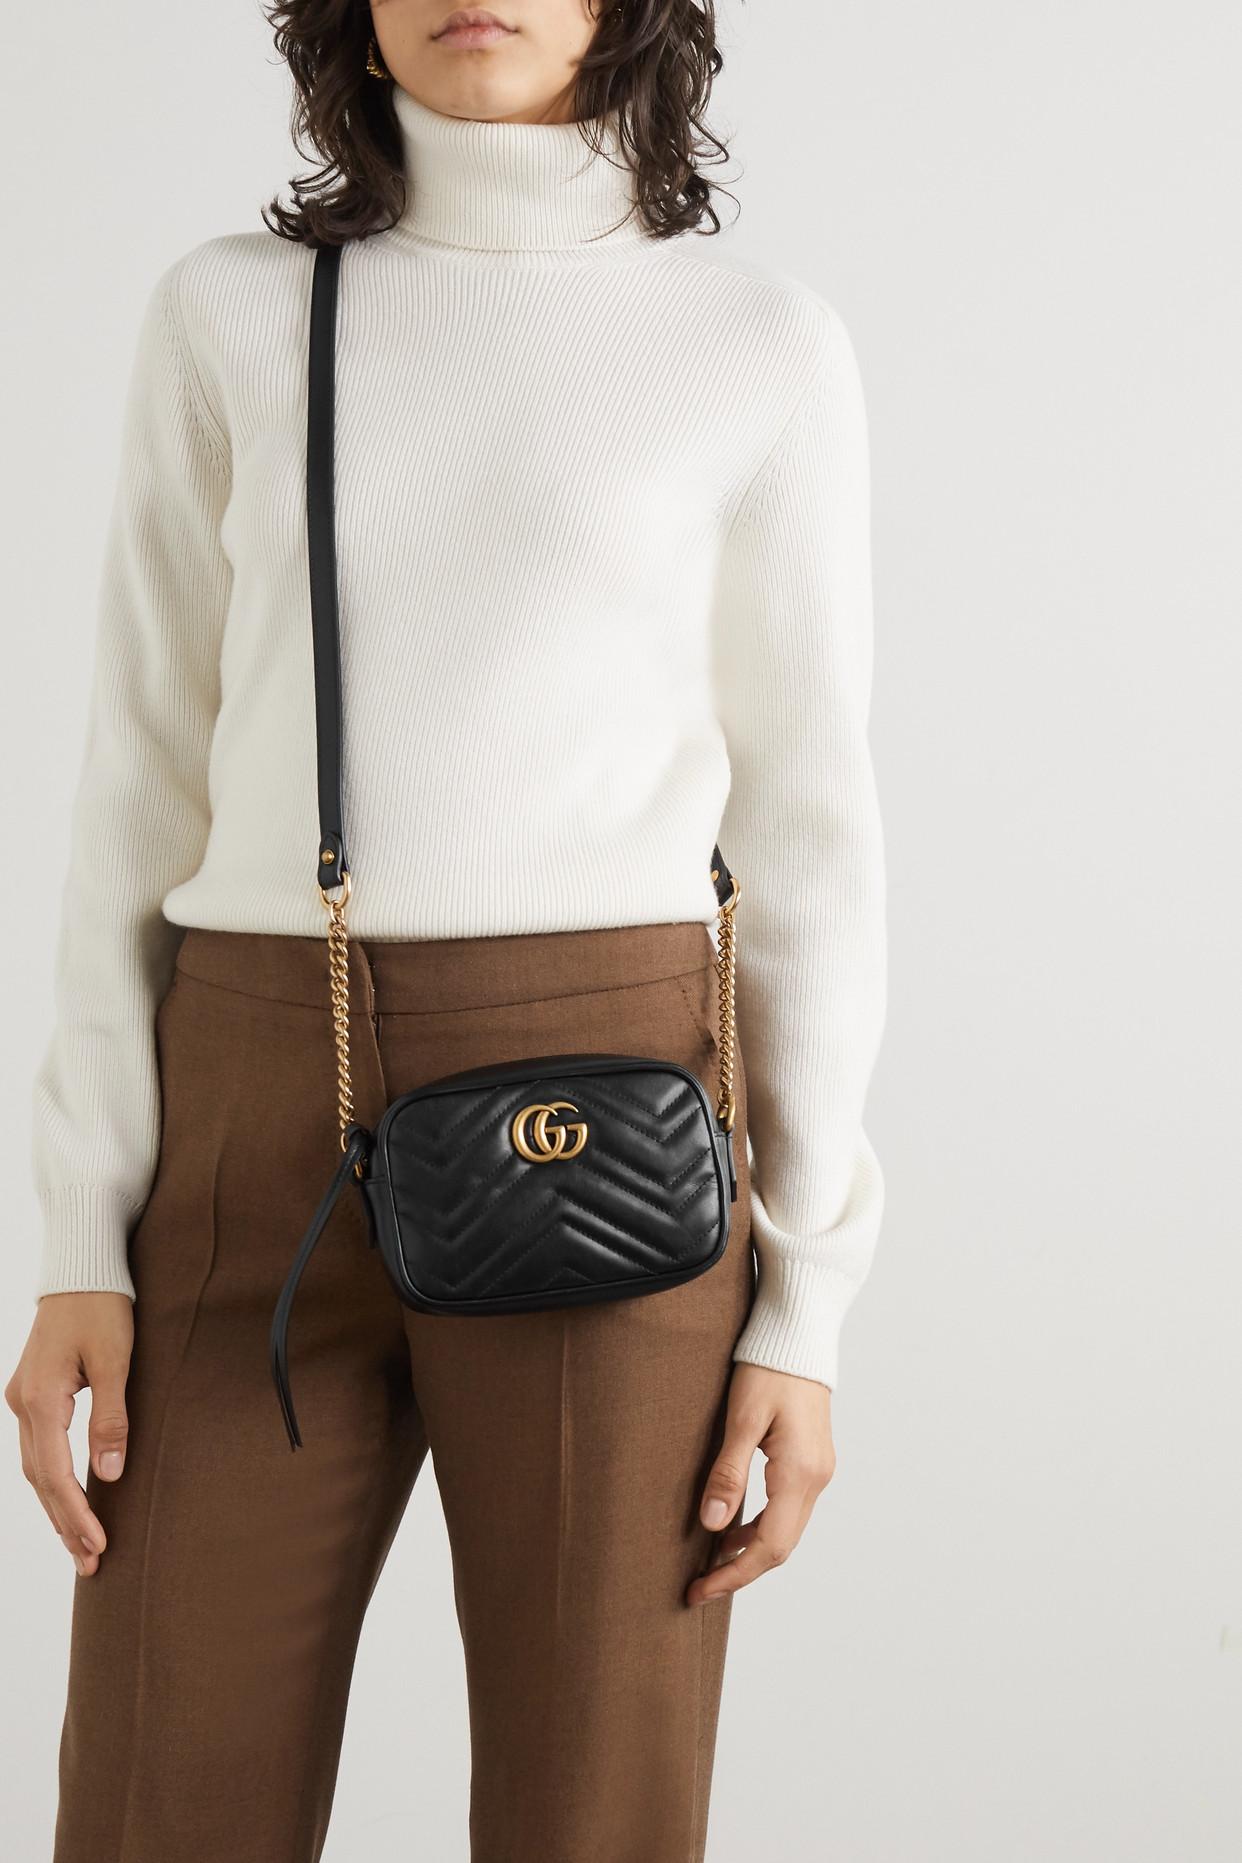 Gucci Black Matelasse Leather Mini GG Marmont Camera Bag Gucci